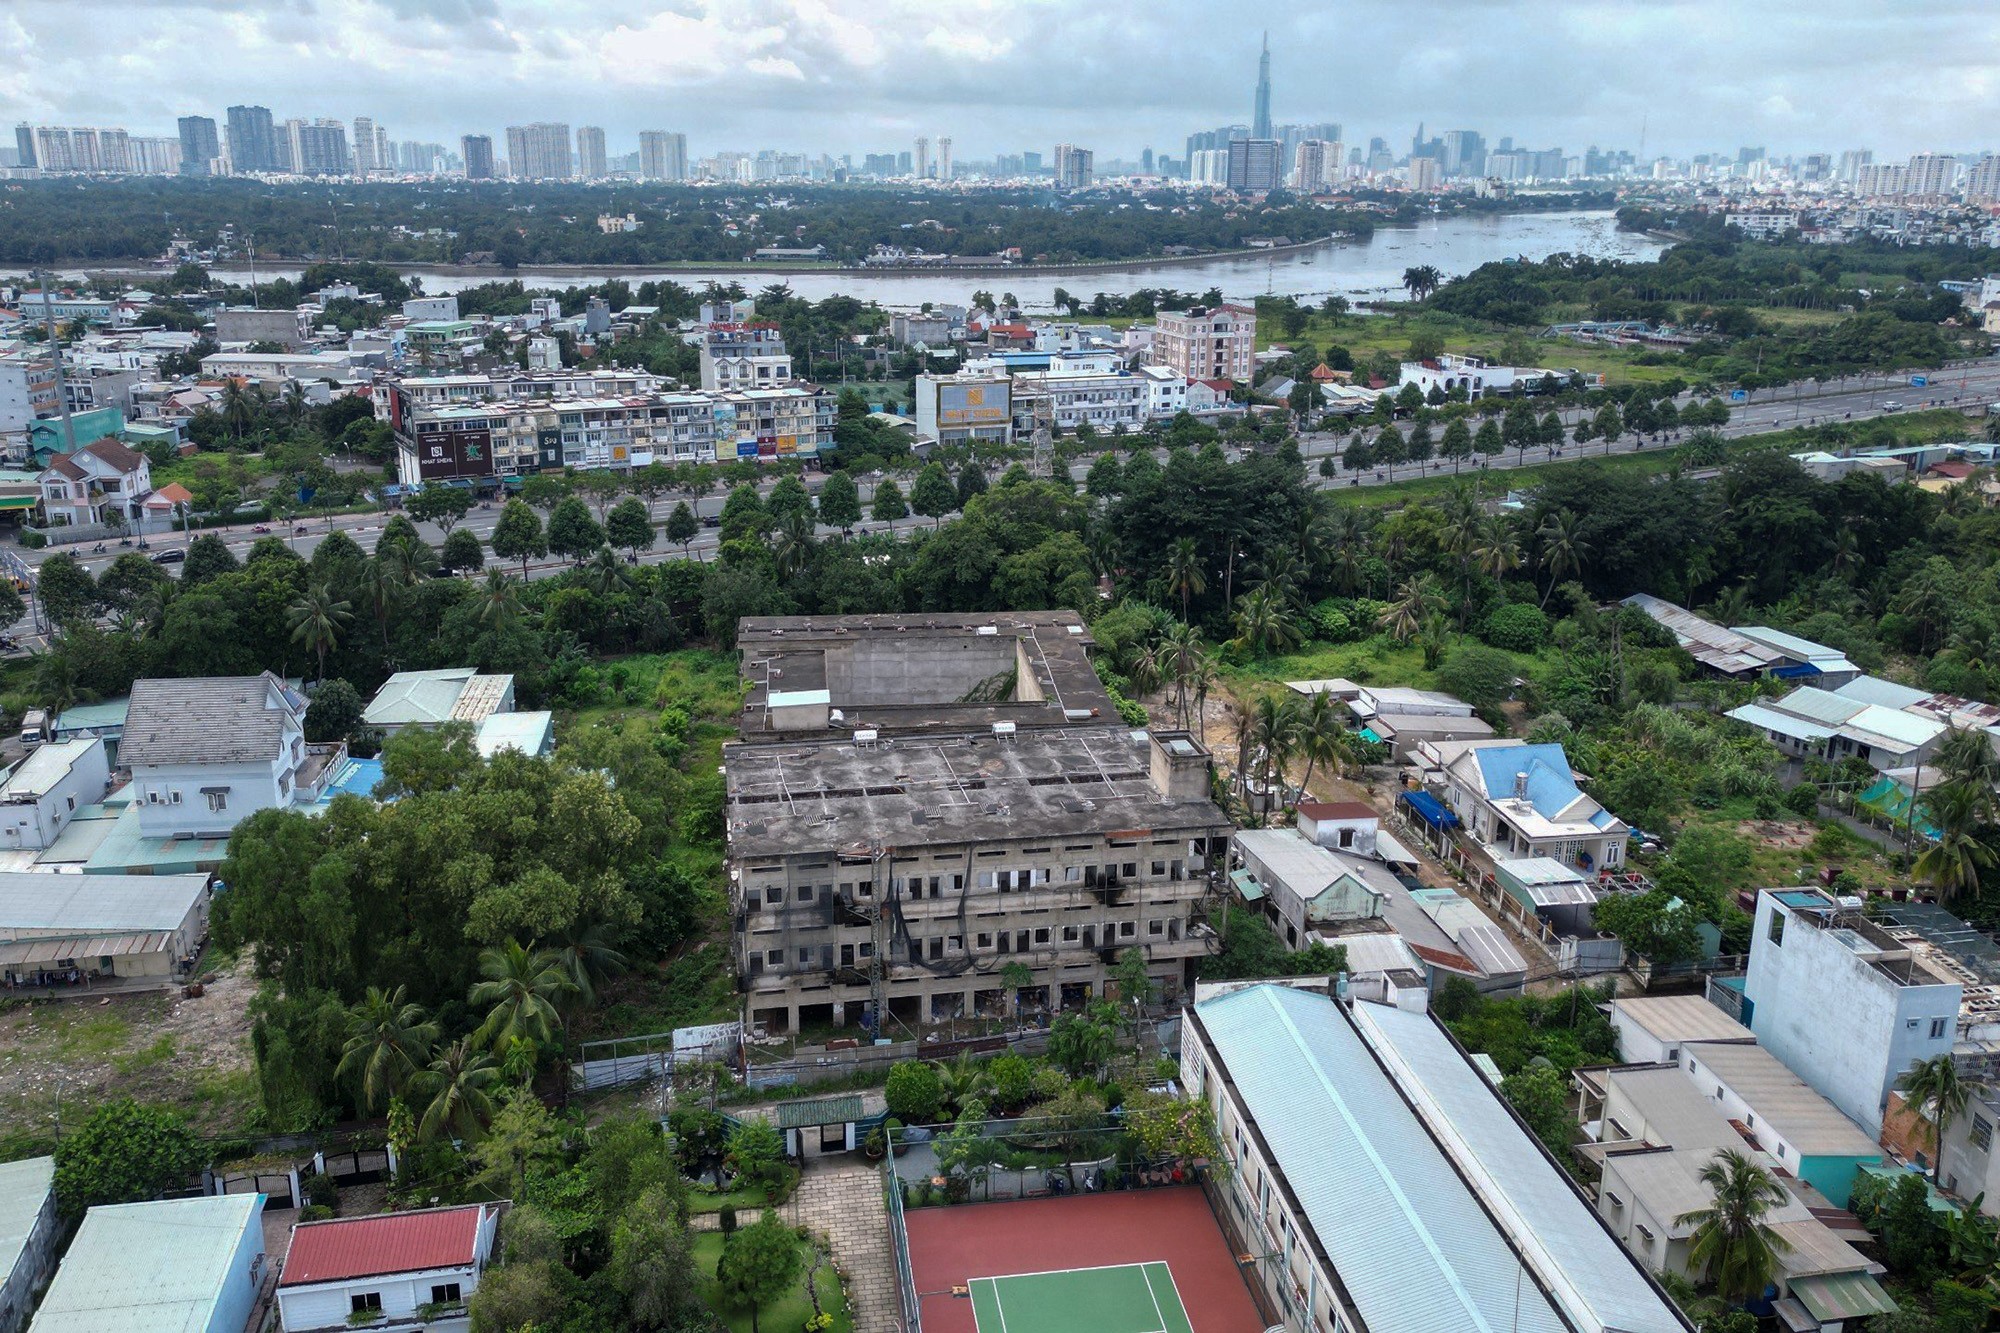 Chung cư mini của Công ty Sài Gòn Hoàng Anh, nằm trên đường số 32, phường Linh Đông, TP Thủ Đức, TP.HCM xây dựng năm 2017, cách trung tâm thành phố khoảng 10km. Dự án hiện là những khối bê tông, mảng tường bị phủ một màu xám xịt nhiều năm qua.